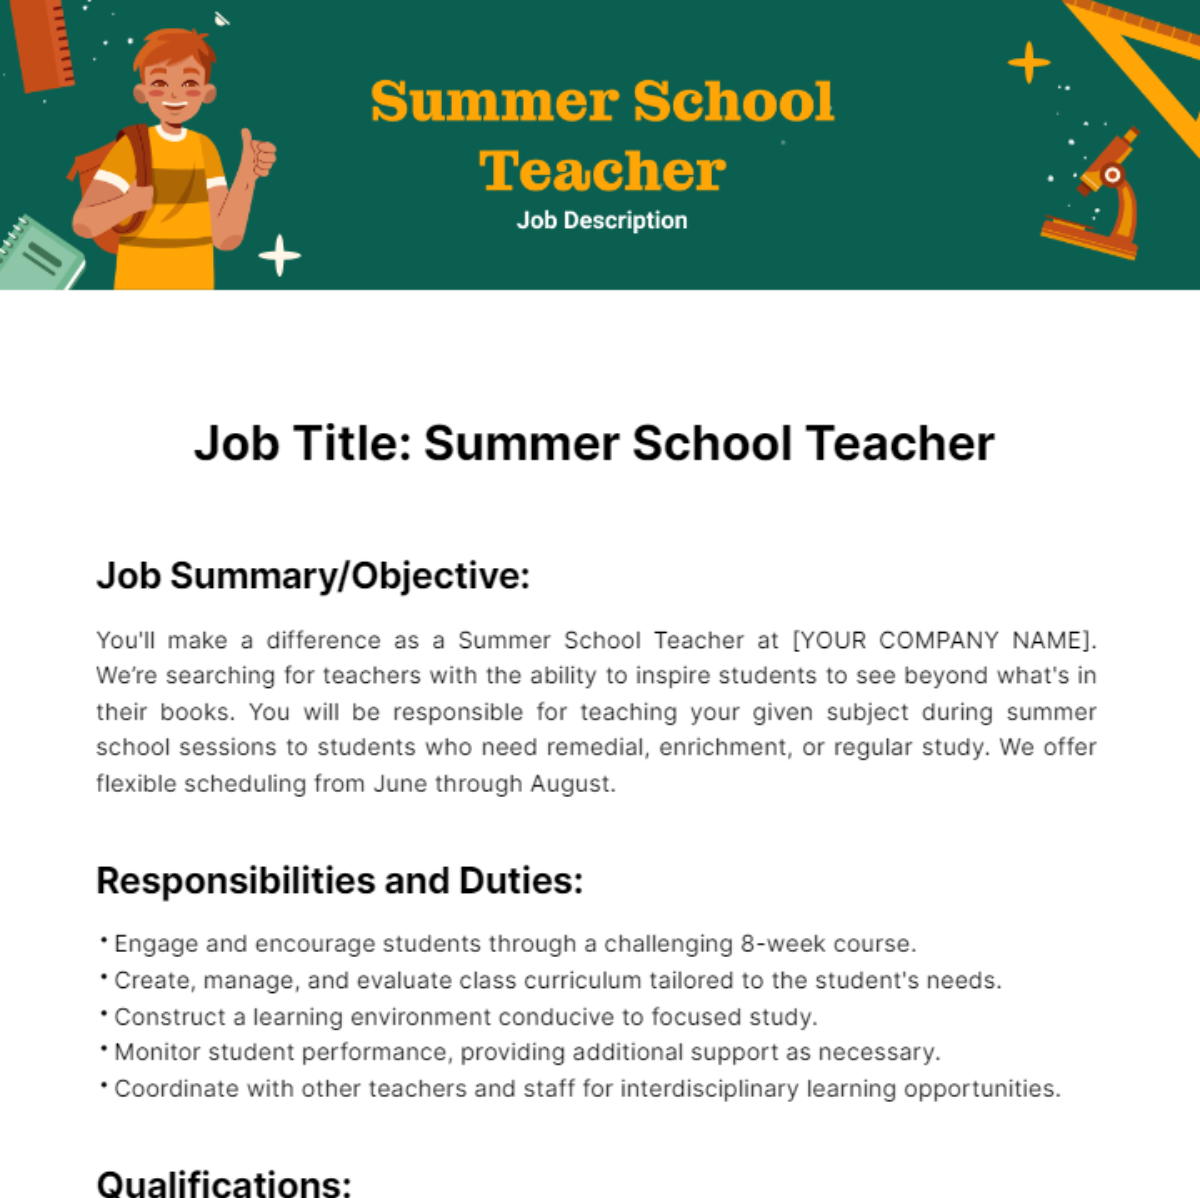 Summer School Teacher Job Description Template